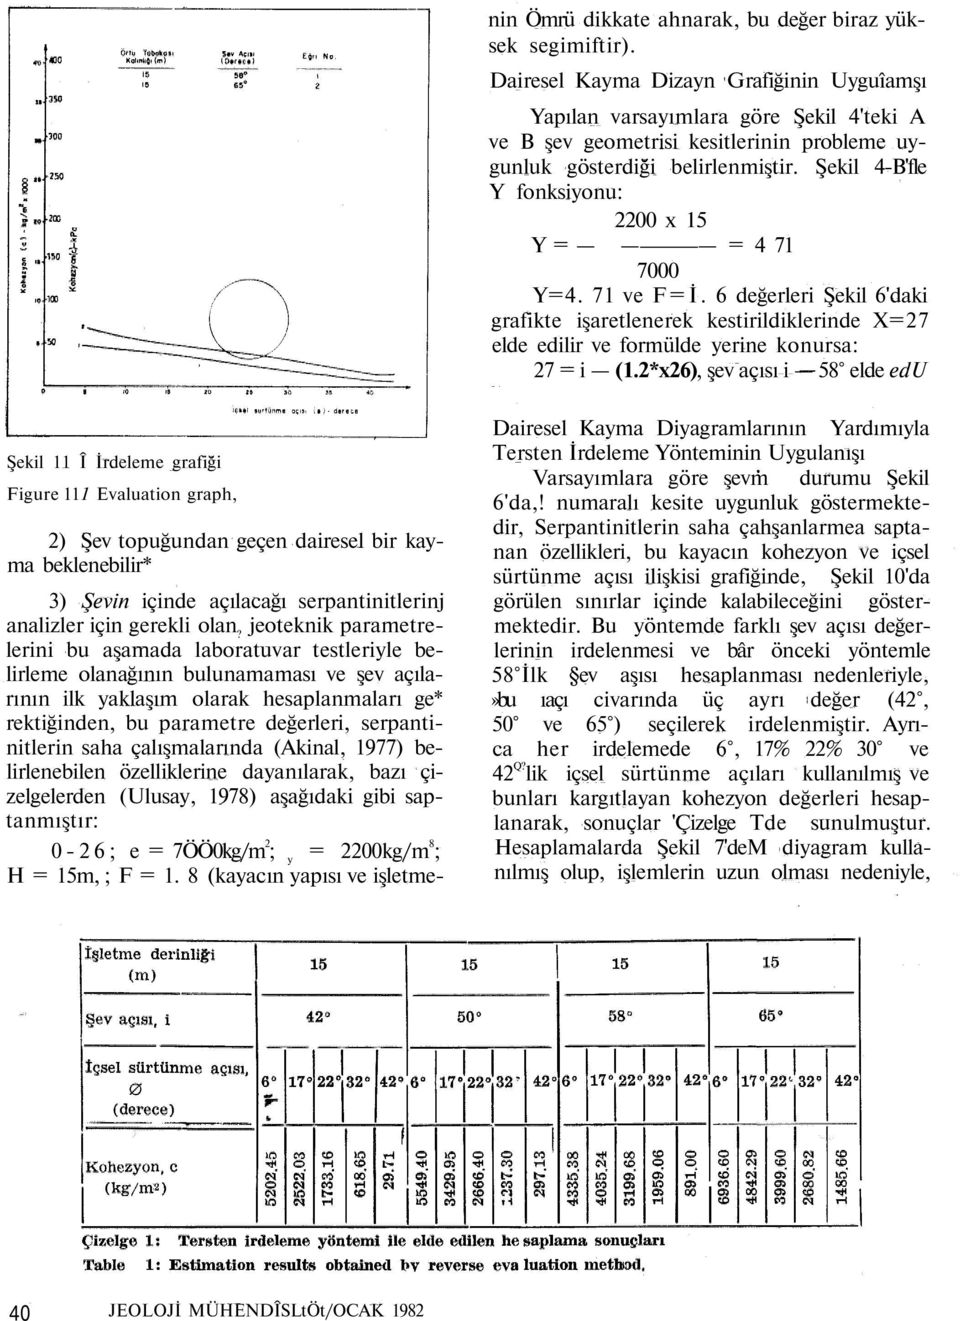 serpantinitlerin saha çalışmalarında (Akinal, 1977) belirlenebilen özelliklerine dayanılarak, bazı çizelgelerden (Ulusay, 1978) aşağıdaki gibi saptanmıştır: 0-26; e = 7ÖÖ0kg/m 2 ; y = 2200kg/m 8 ; H